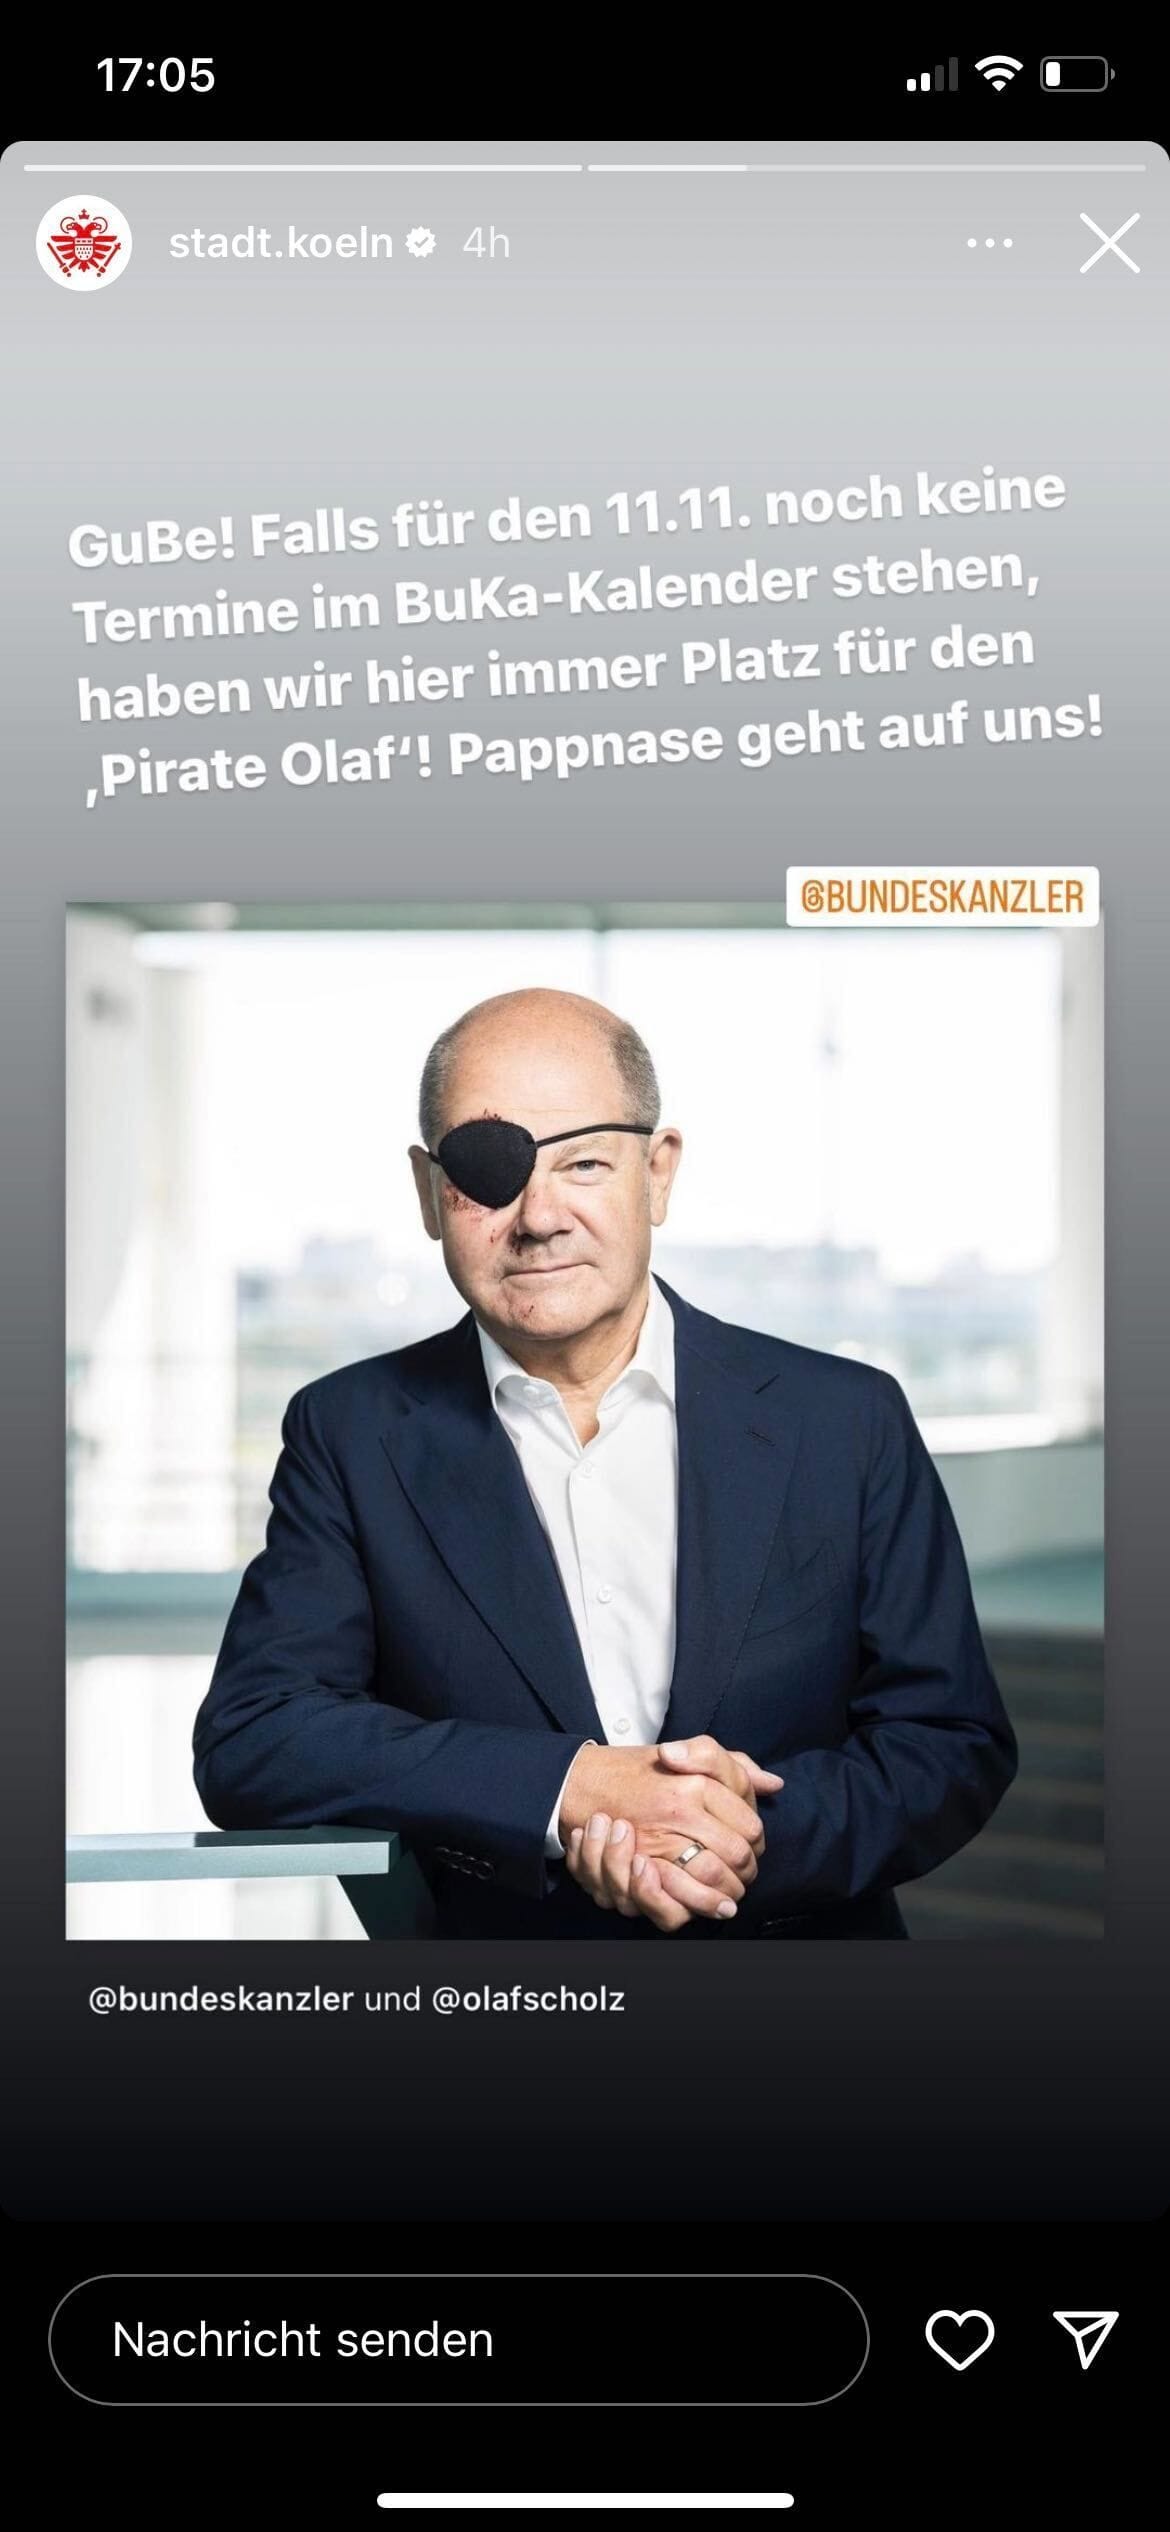 Post der Stadt Köln auf Instagram über Kanzler Olaf Scholz mit Augenklappe